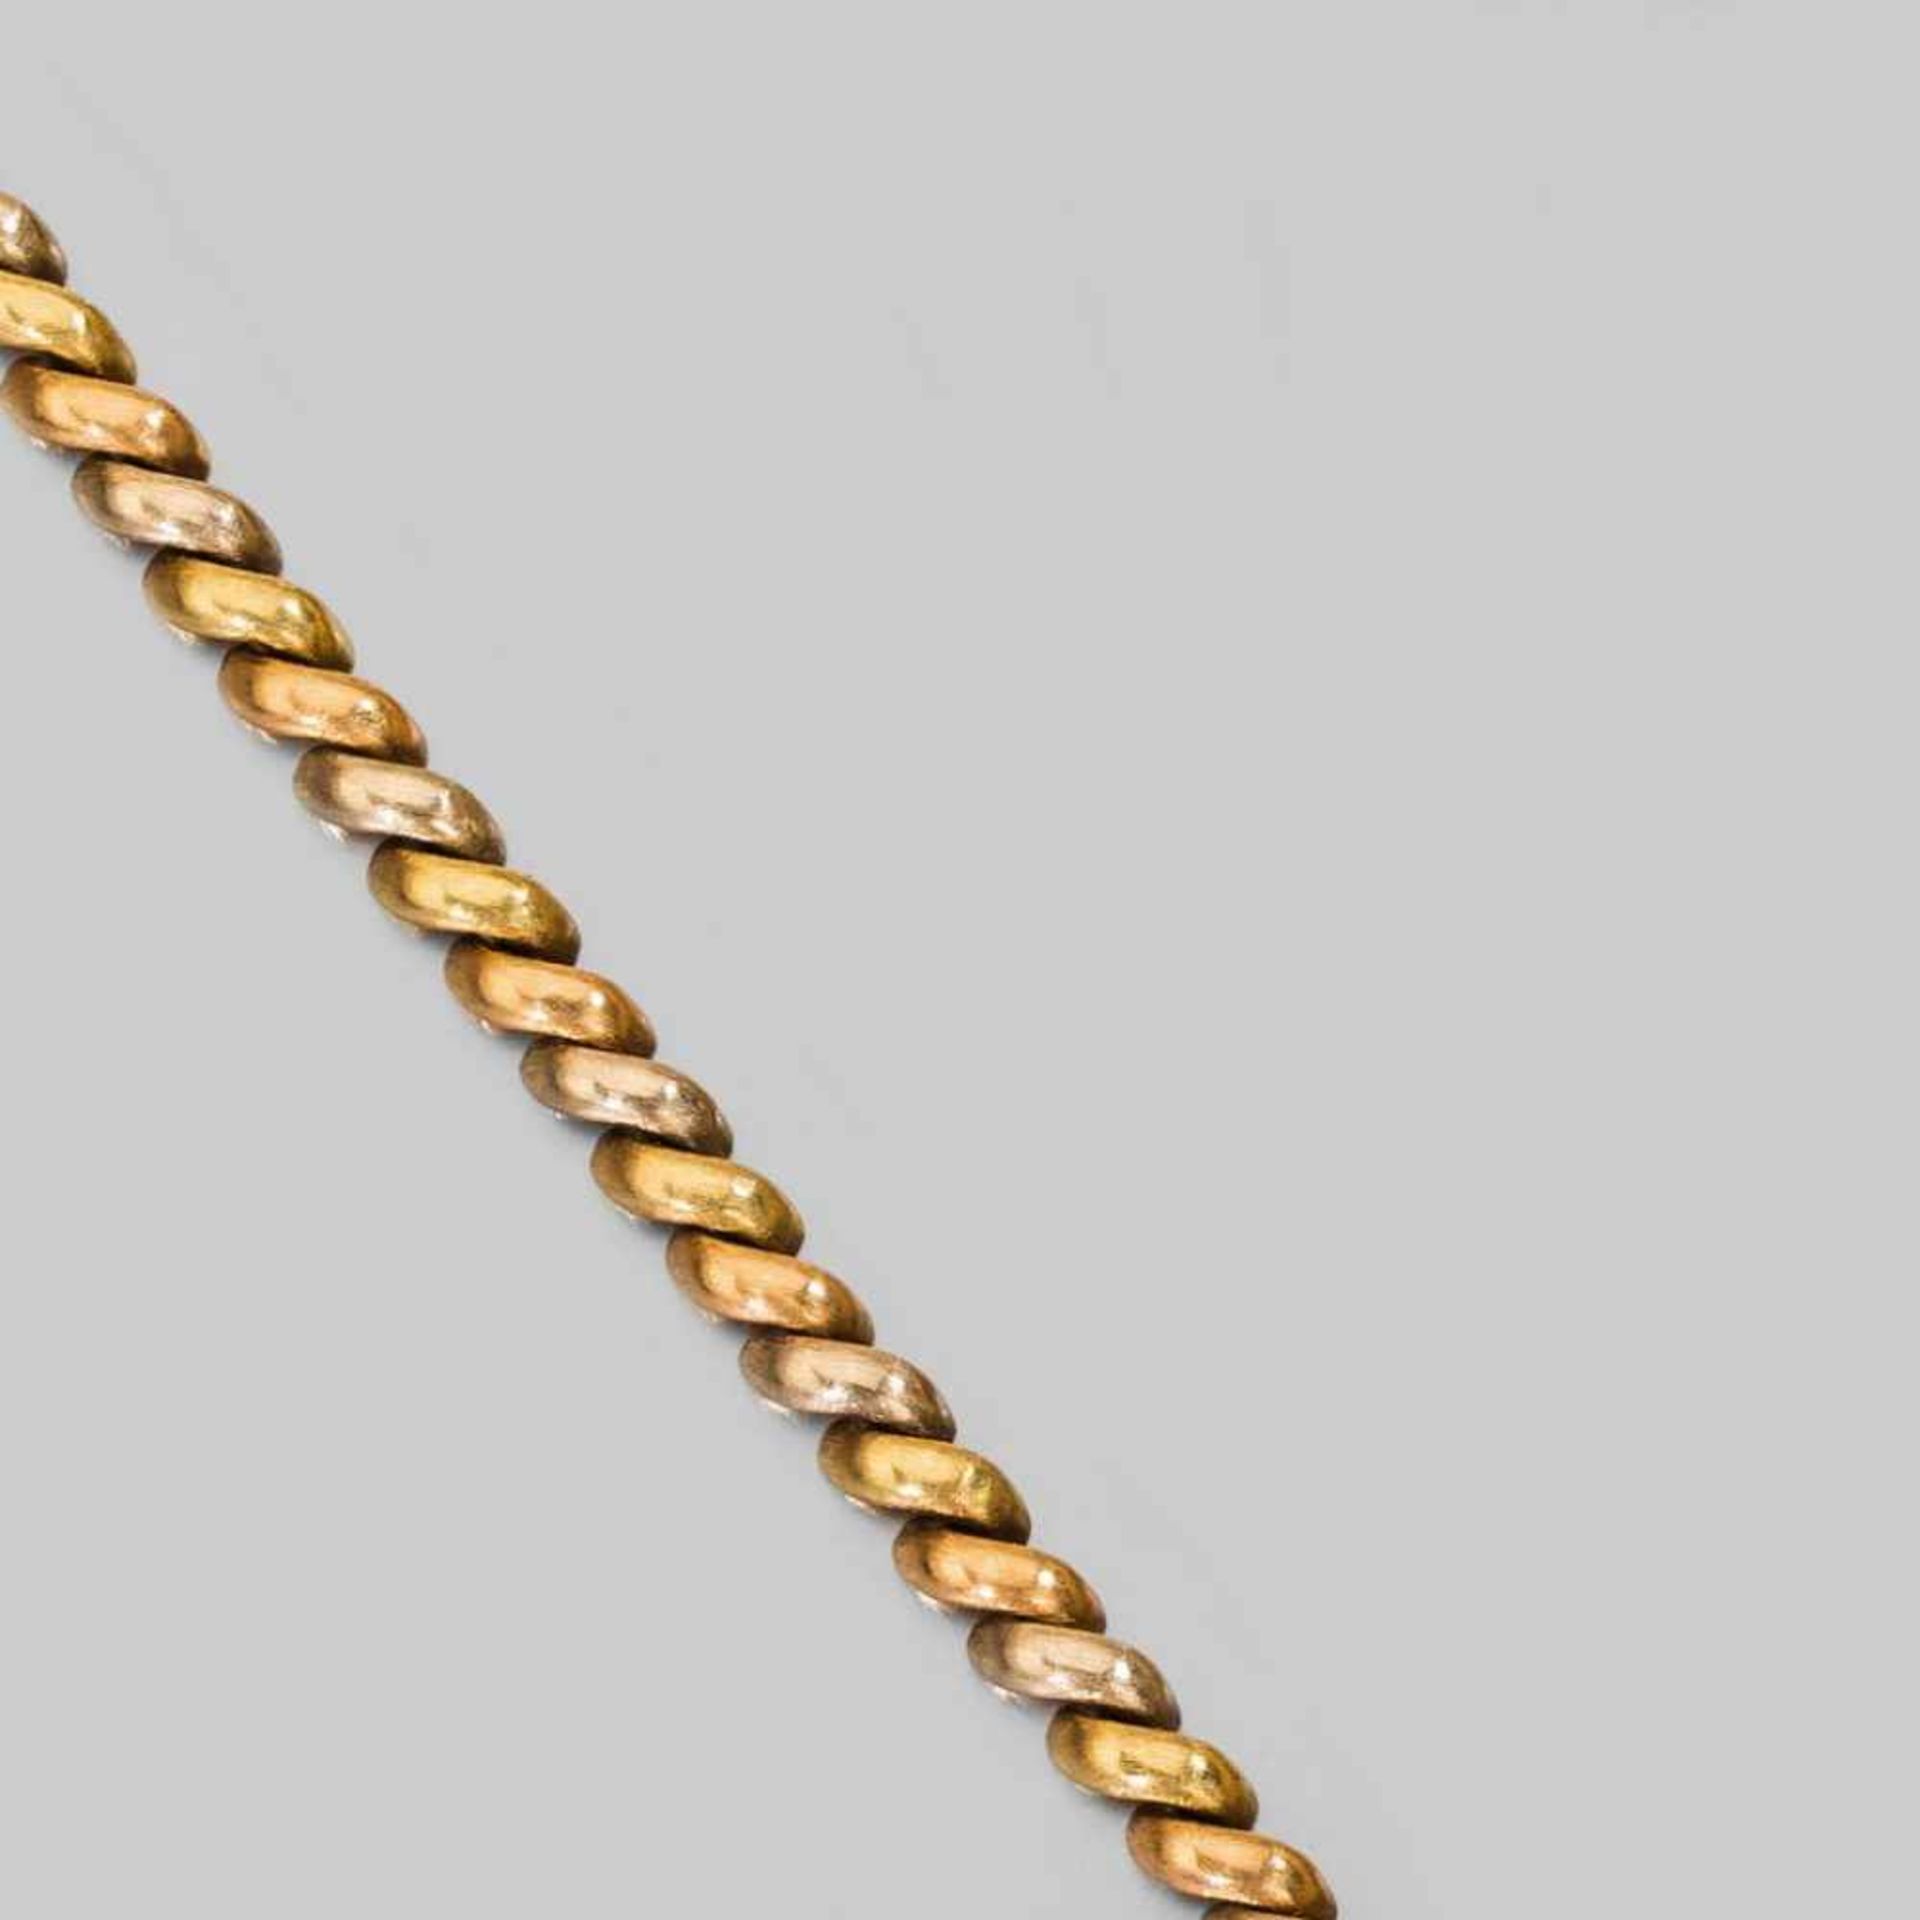 Goldenes Armband à trois couleurs. Feine satinierte Halbbögen. 18 ct. GG, WG und RG, 31 g. L 19 cm